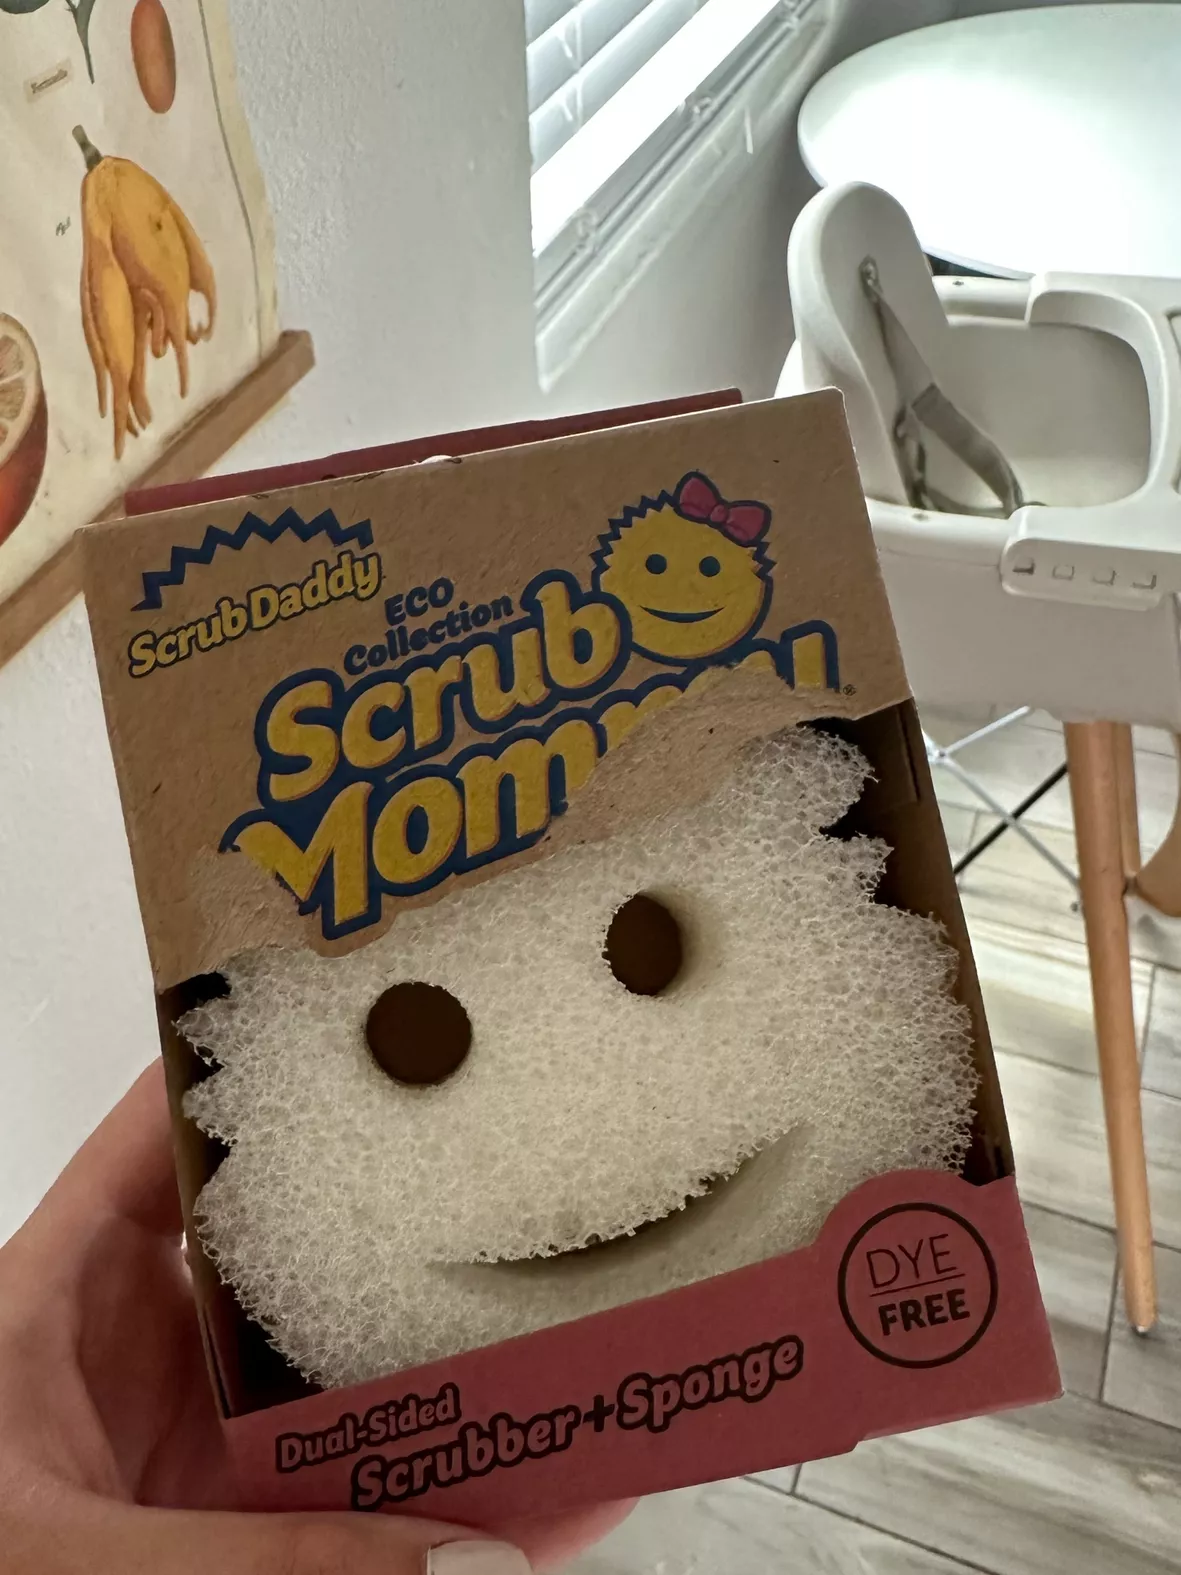 Scrub Daddy Scrub Mommy Sponge, … curated on LTK